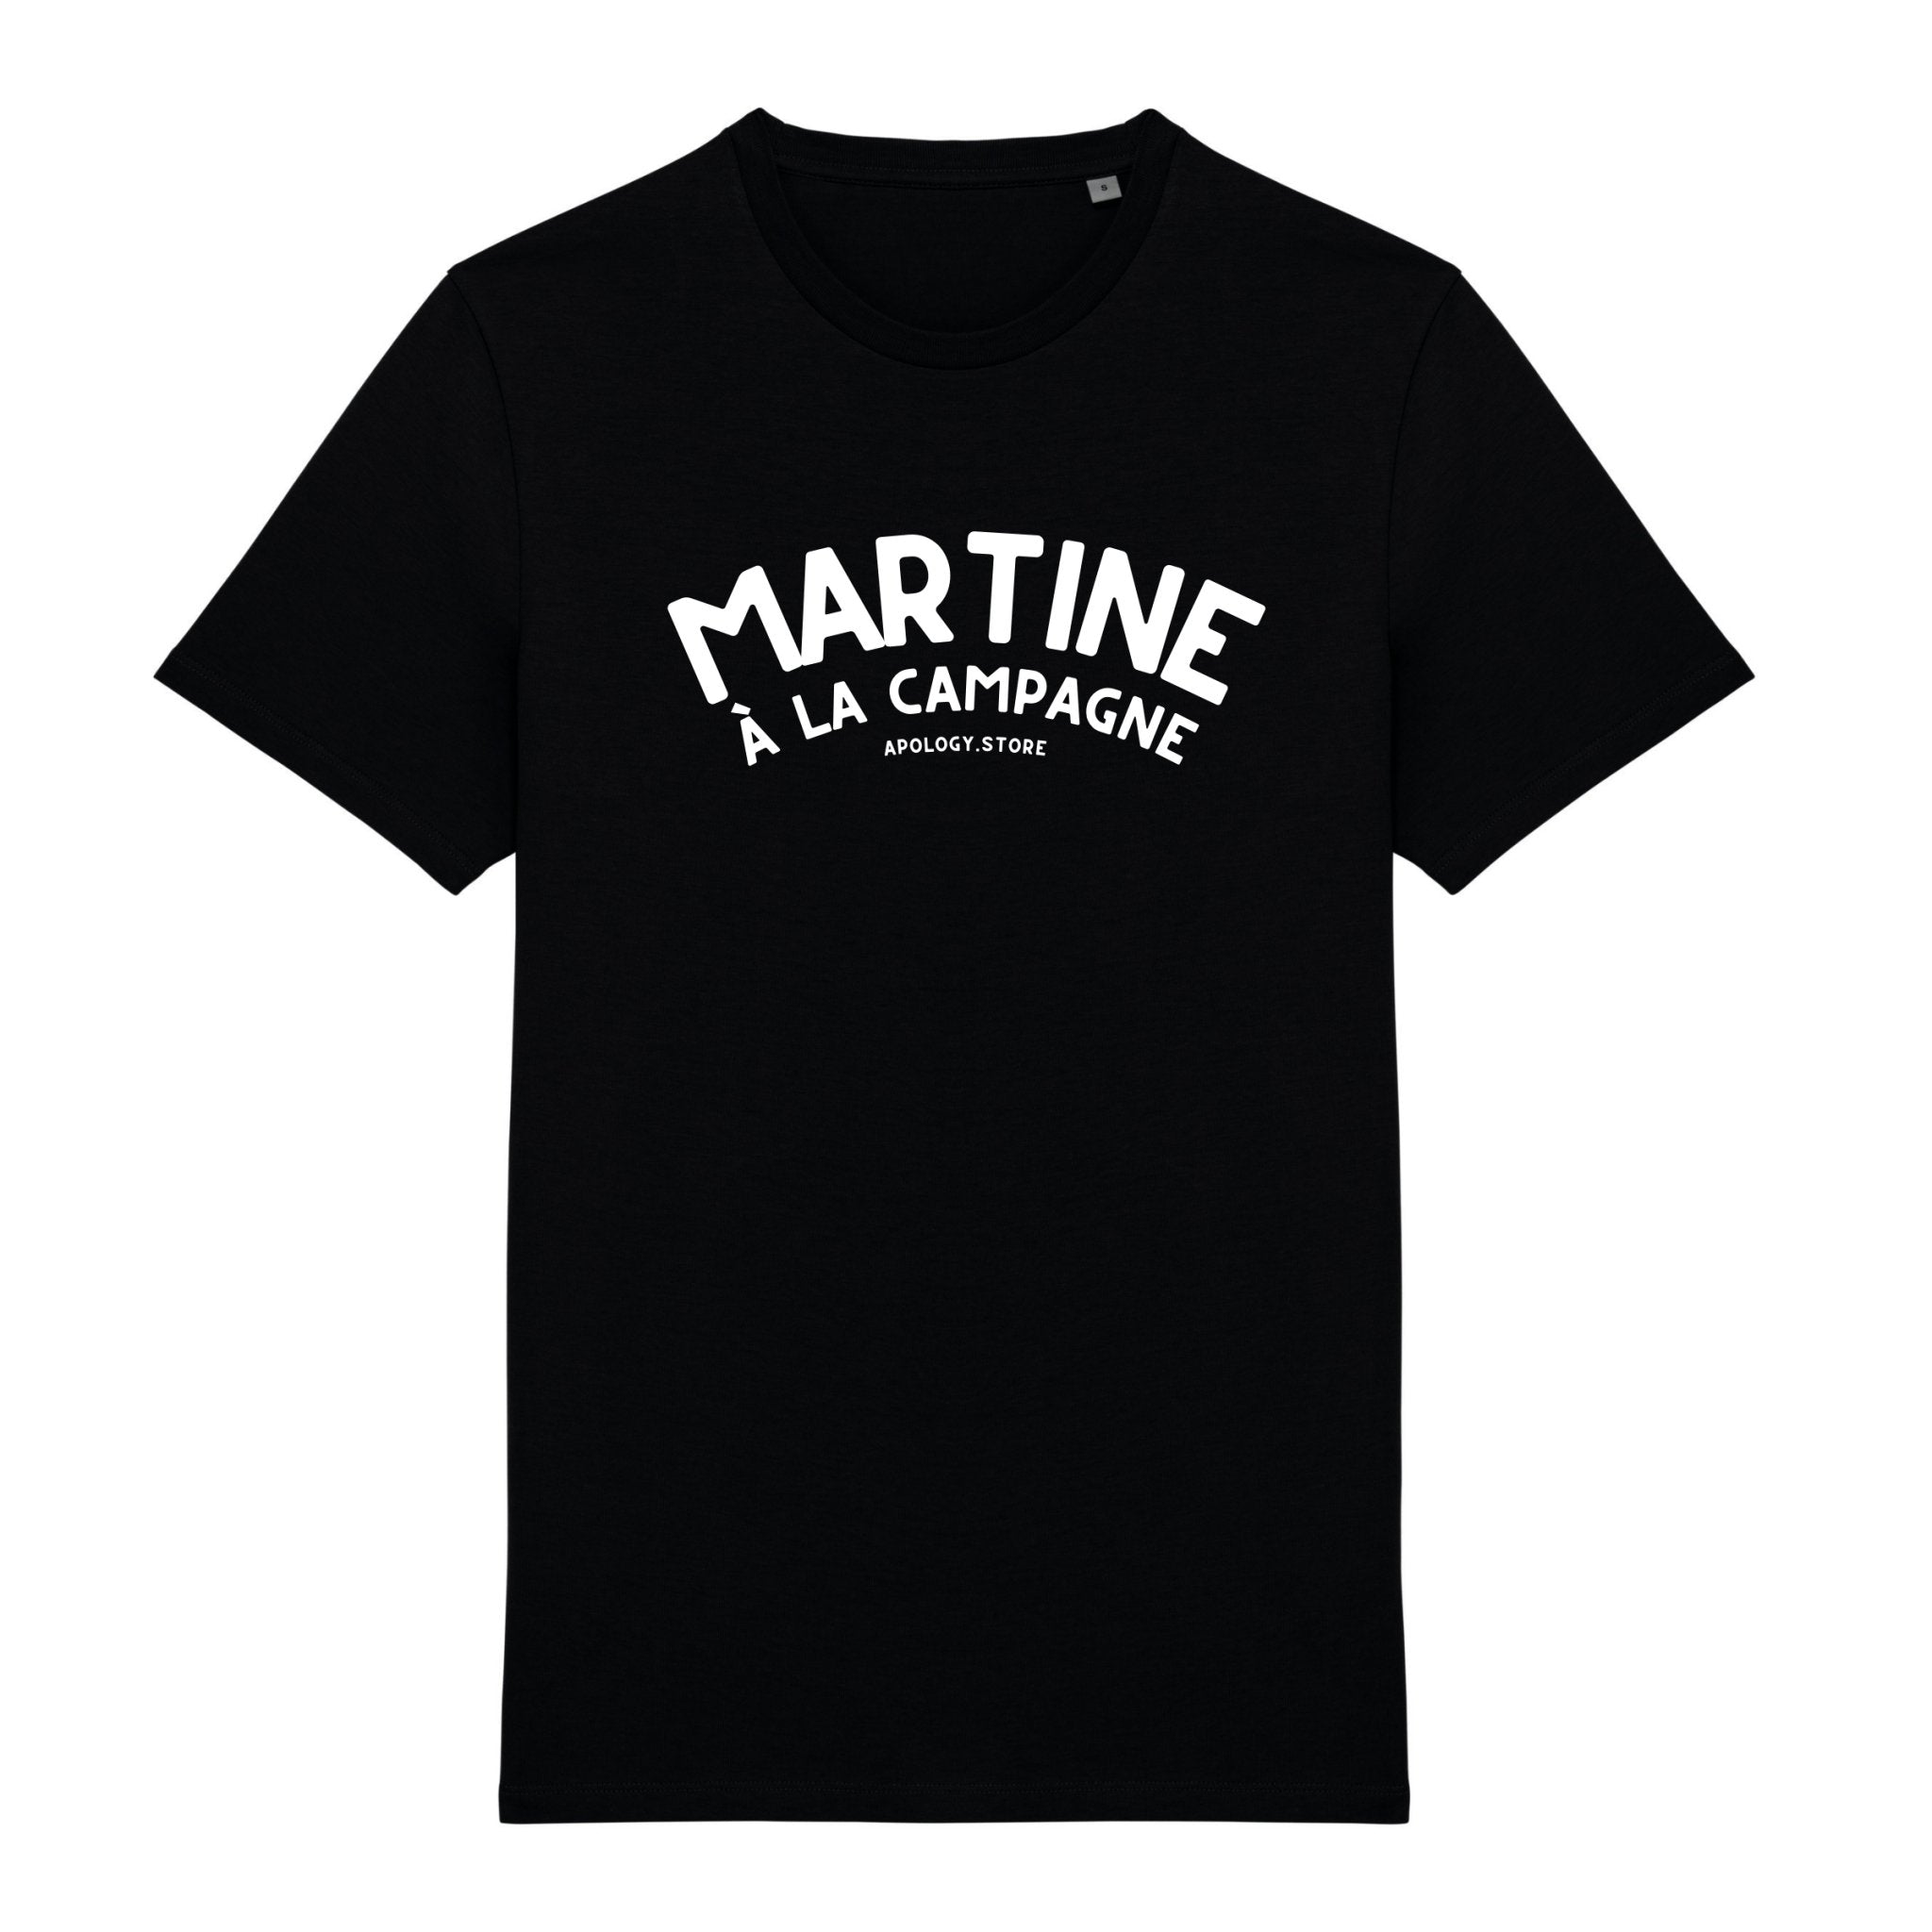 T-shirt Martine à la Campagne - Fabriqué au Portugal XS Noir - Imprimé en France